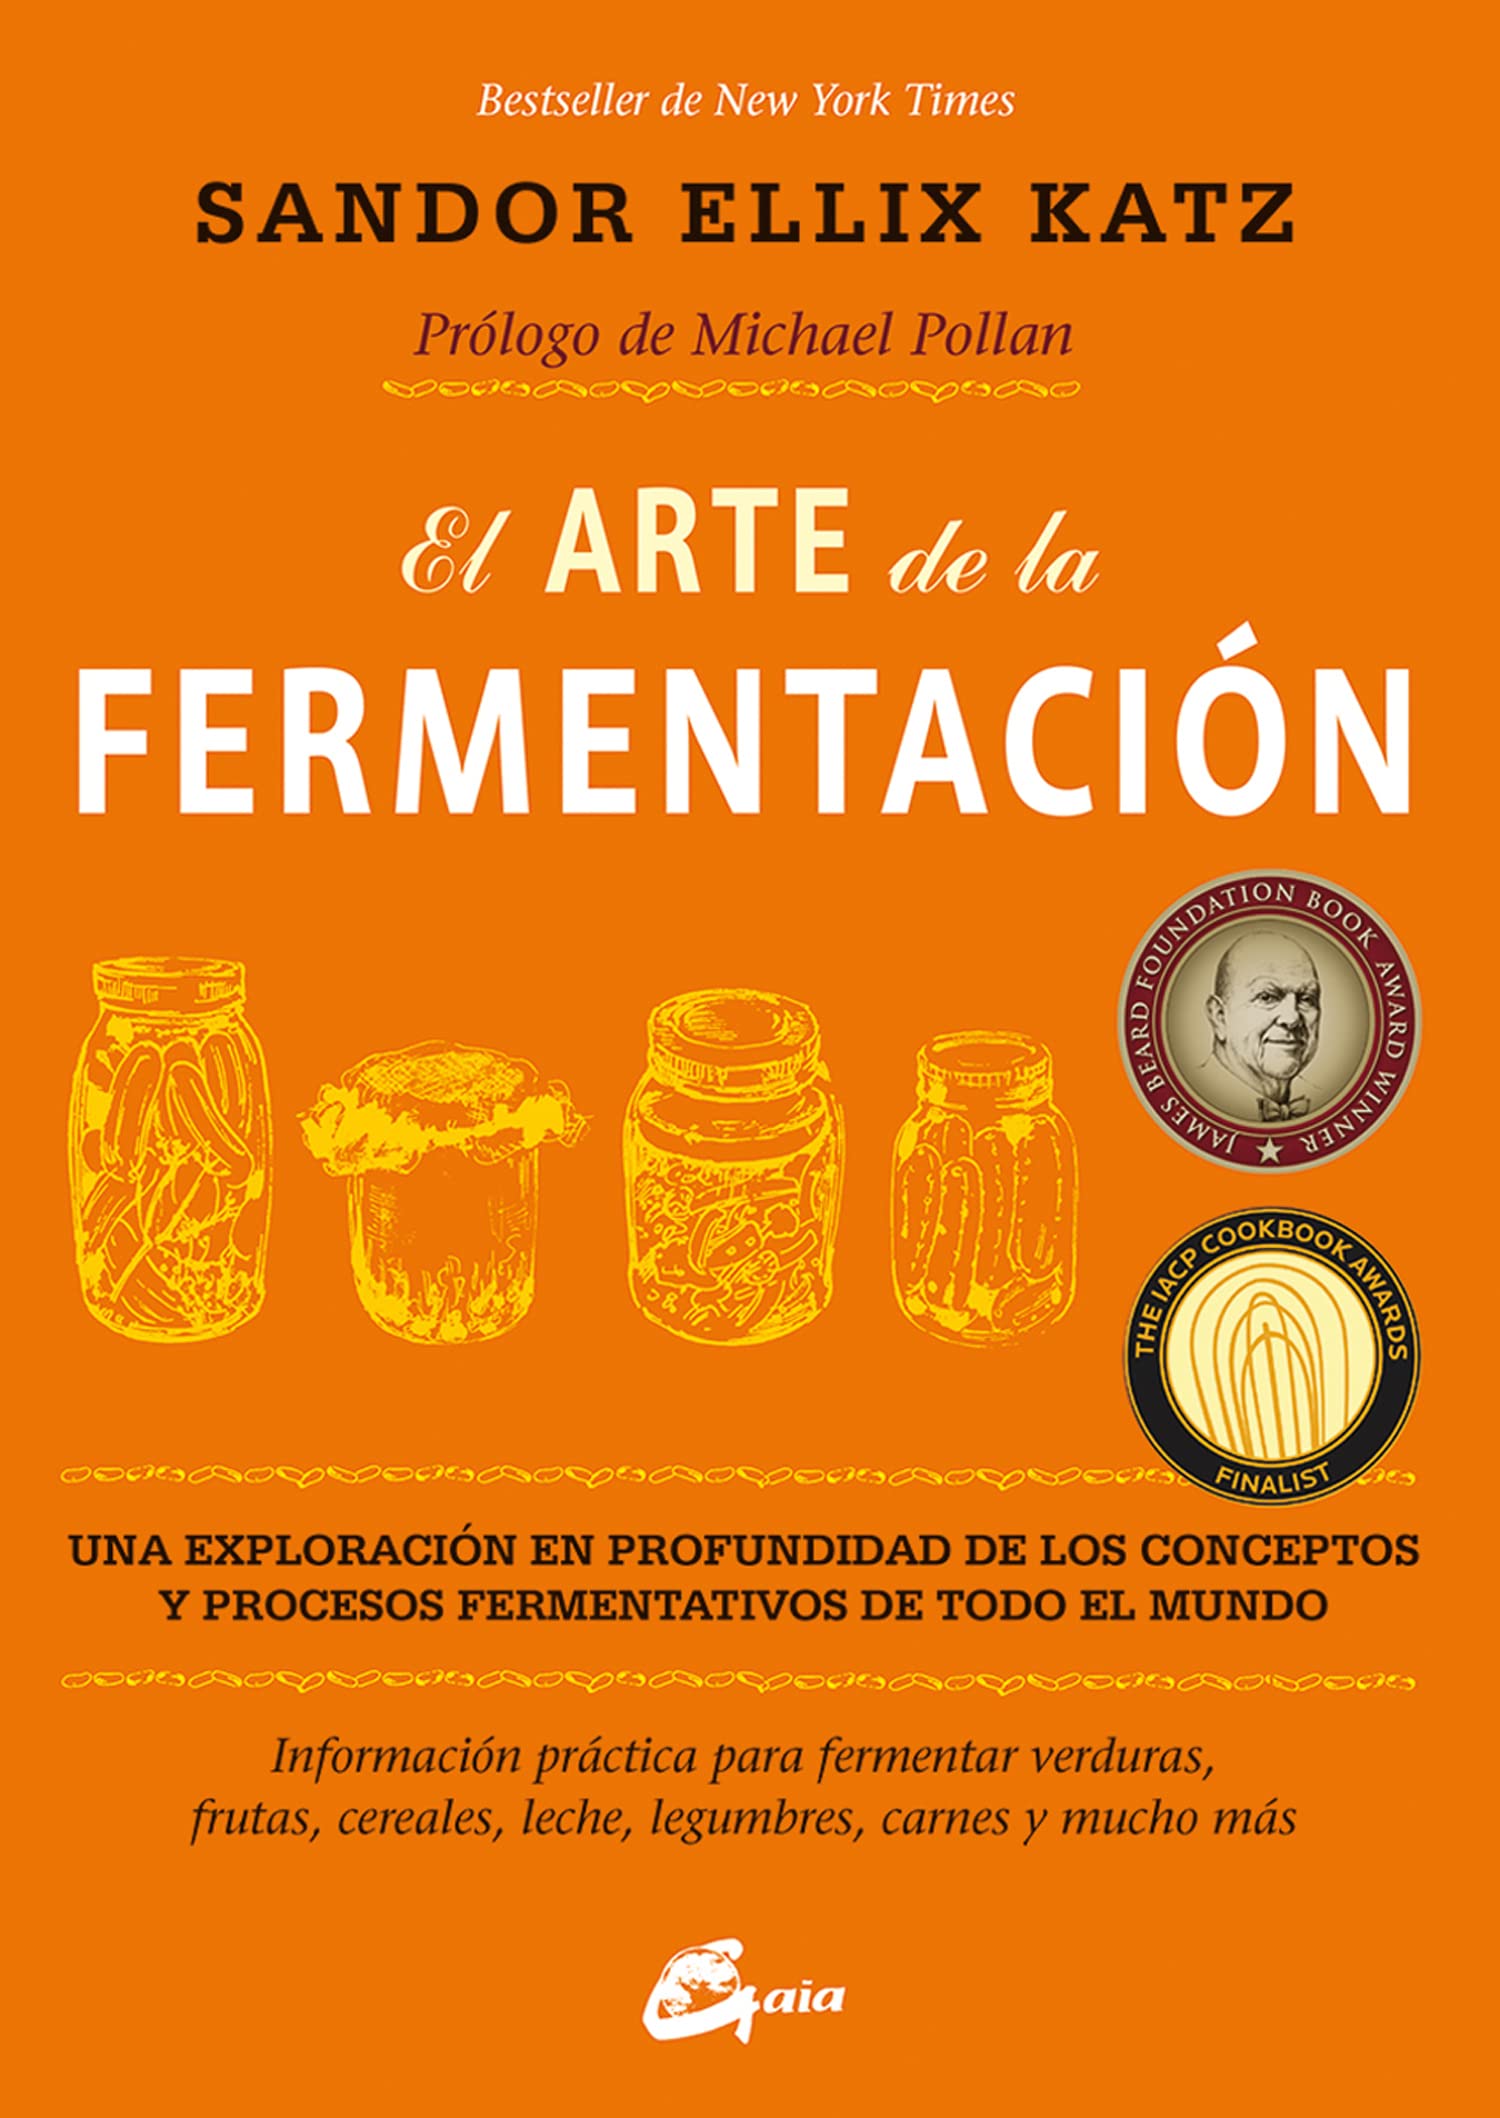 El arte de la fermentación: Una exploración en profundidad de los conceptos y procesos fermentativos de todo el mundo. Información práctica para ... carnes y mucho más (Spanish Edition)